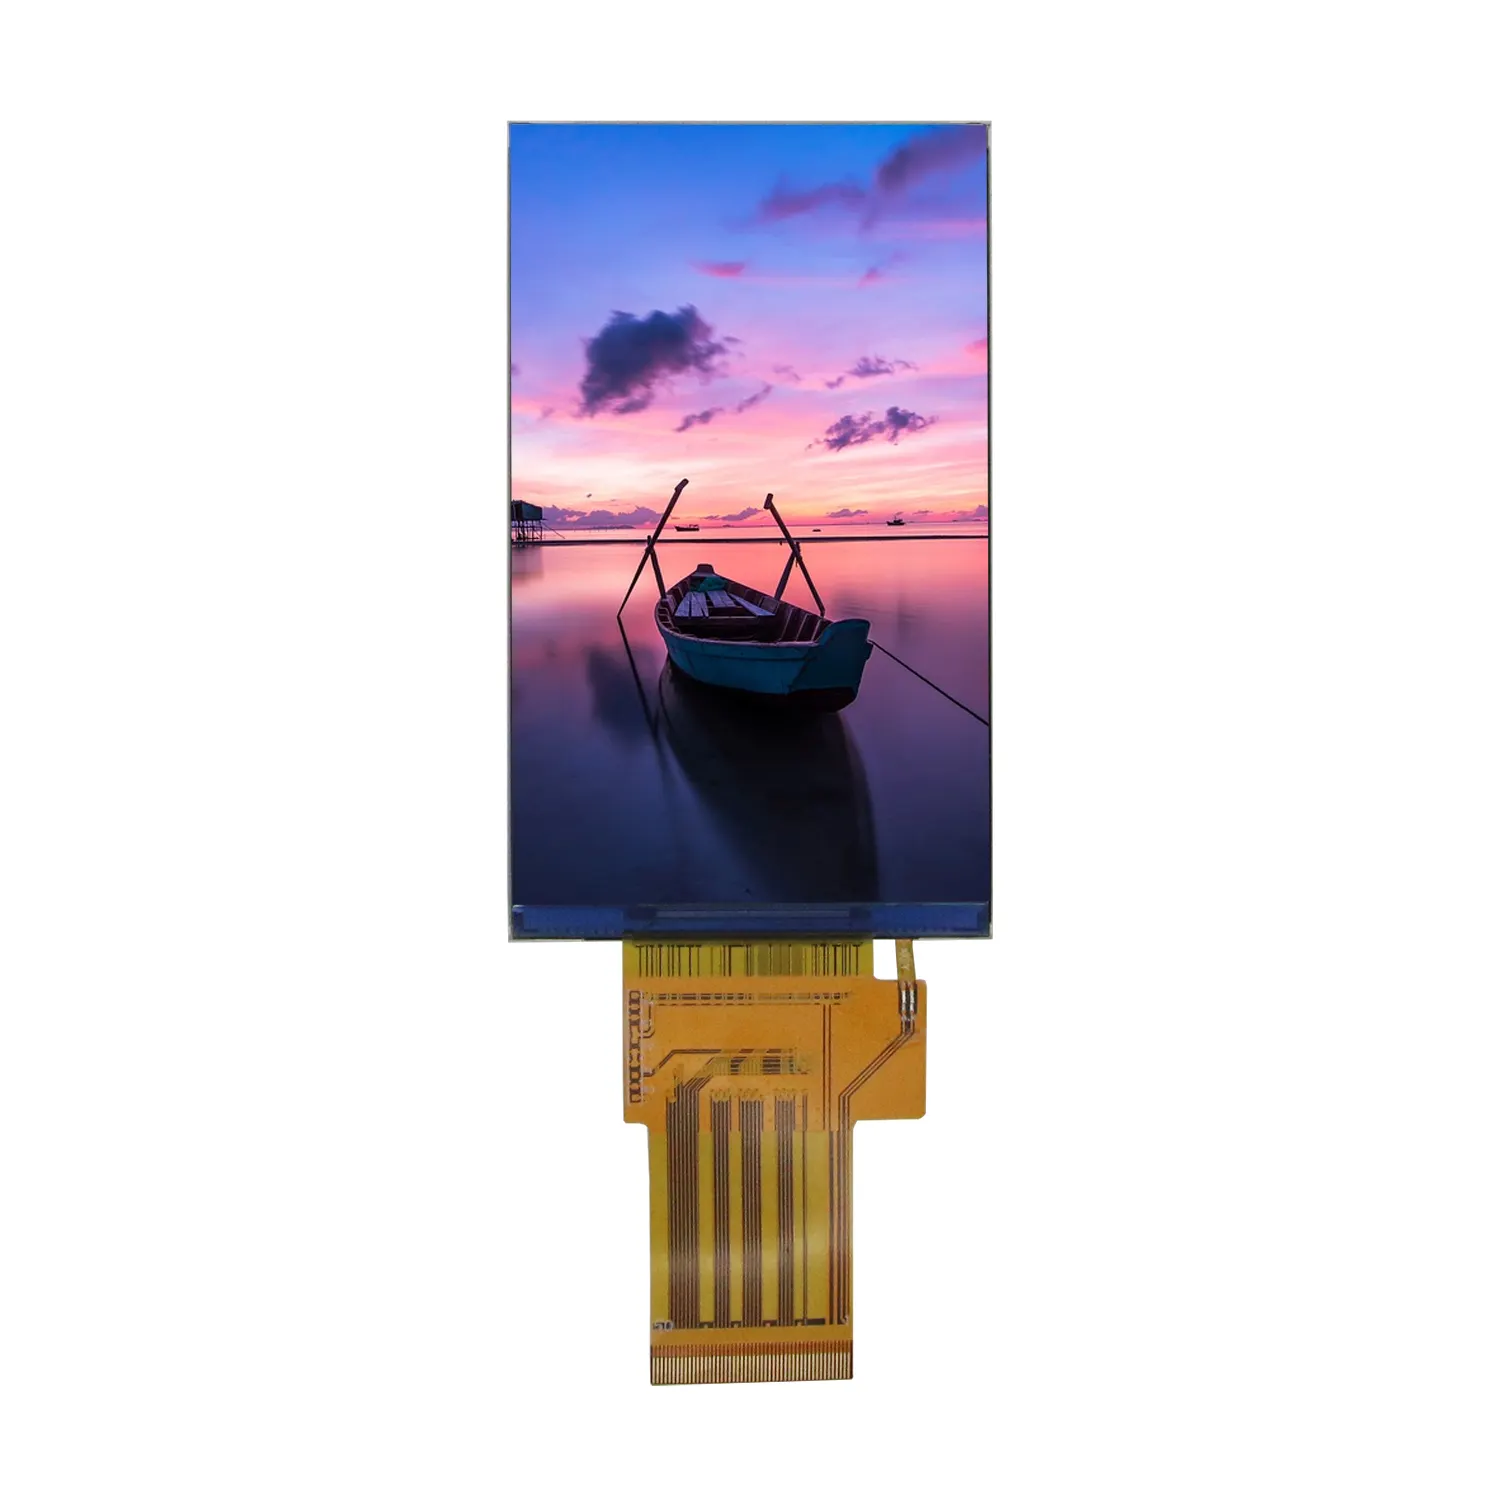 Chất lượng cao 4.3 inch 3-Wire SPI + 16bit RGB giao diện Full View LCD module TFT điều khiển công nghiệp thiết bị